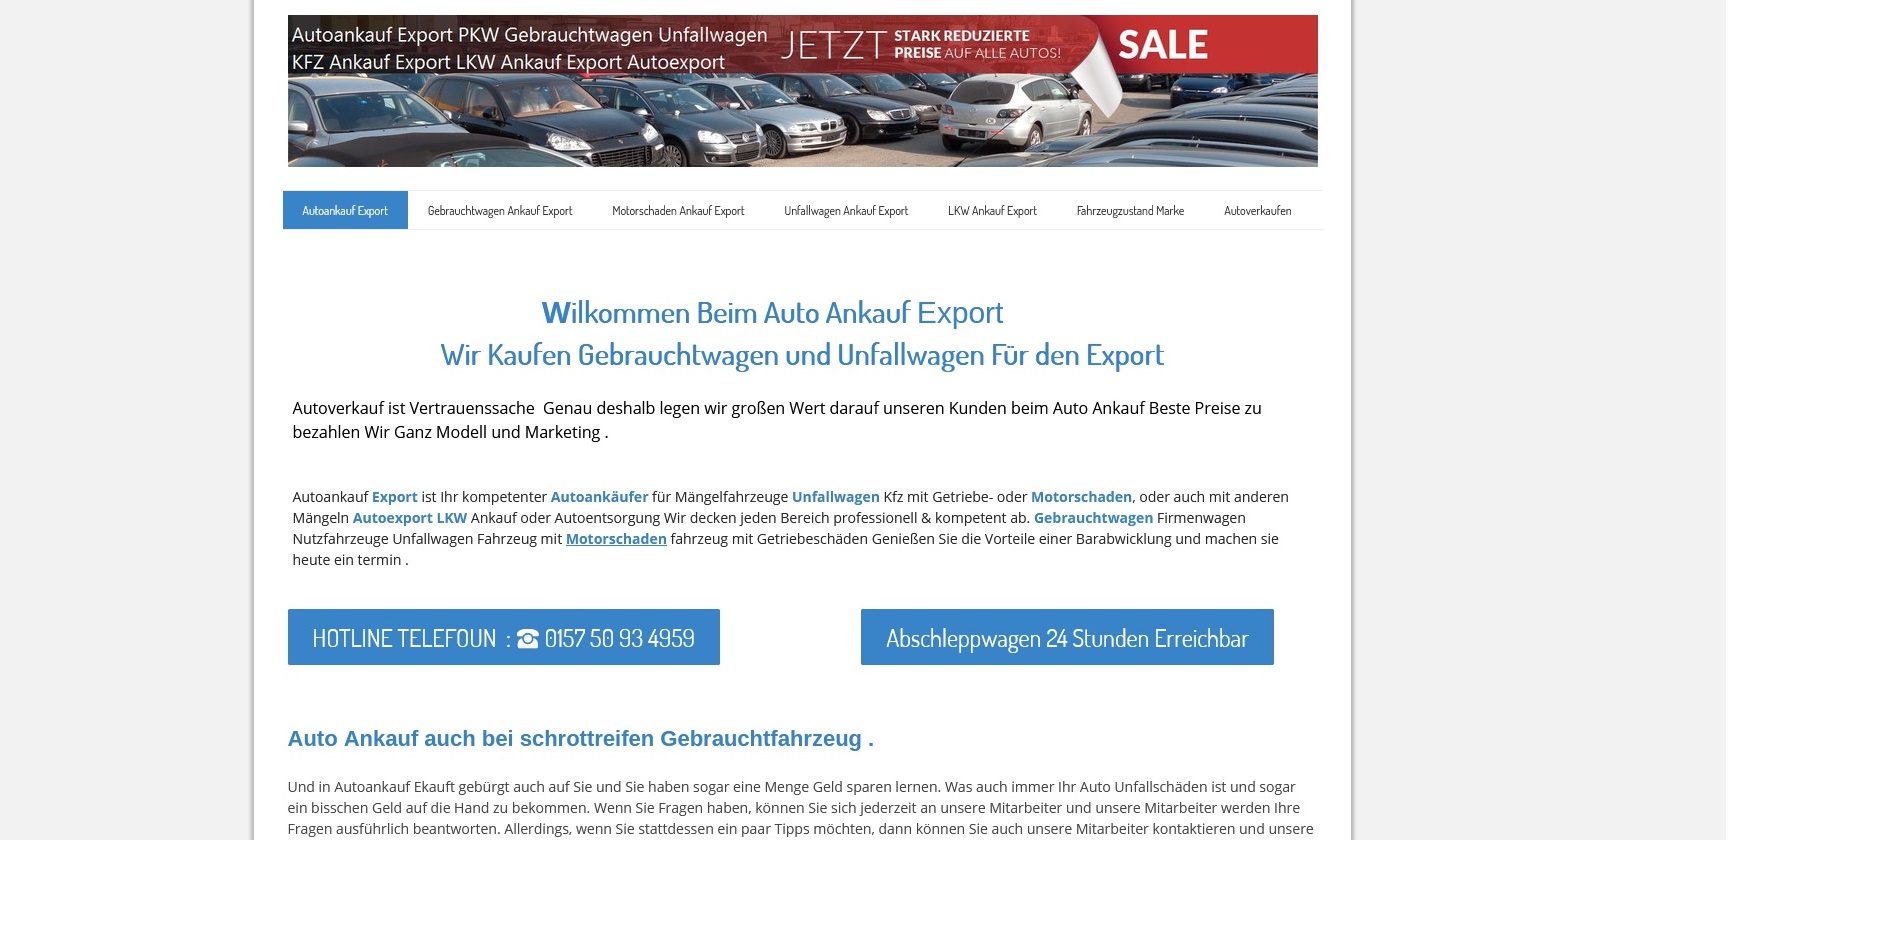 autoankauf koblenz kauft auch ihre auto ohne tuev - Autoankauf Koblenz kauft auch ihre Auto ohne TÜV